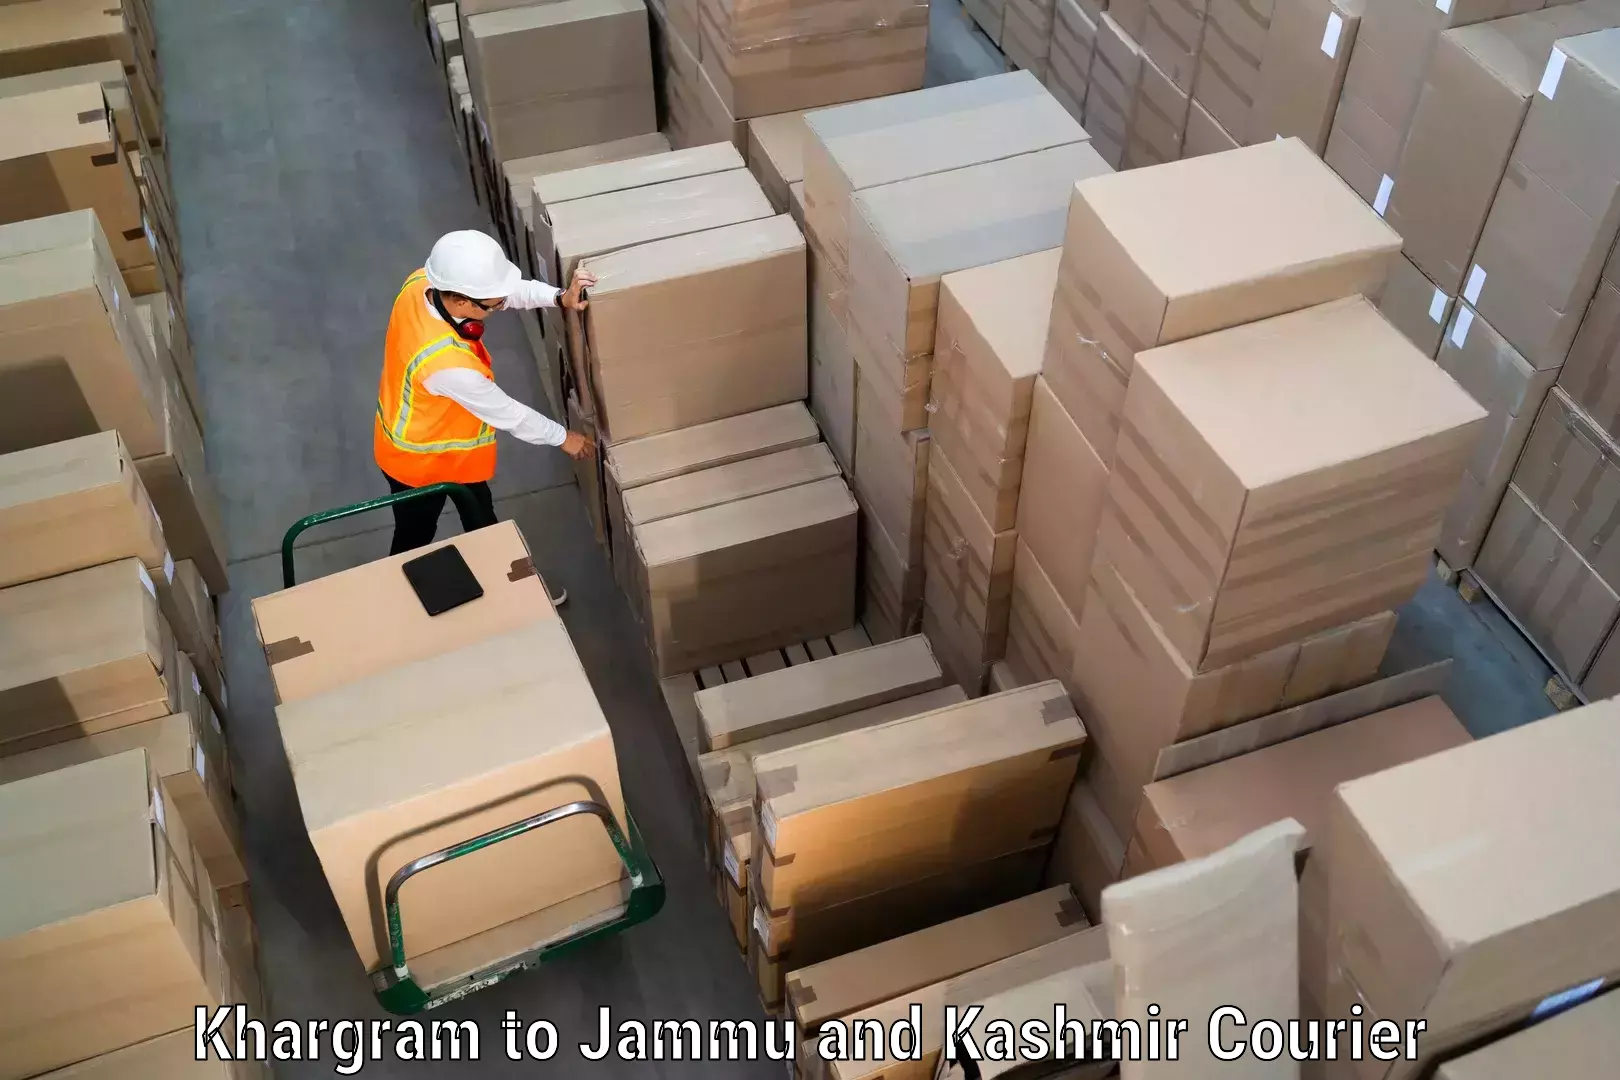 Global shipping solutions Khargram to Kishtwar